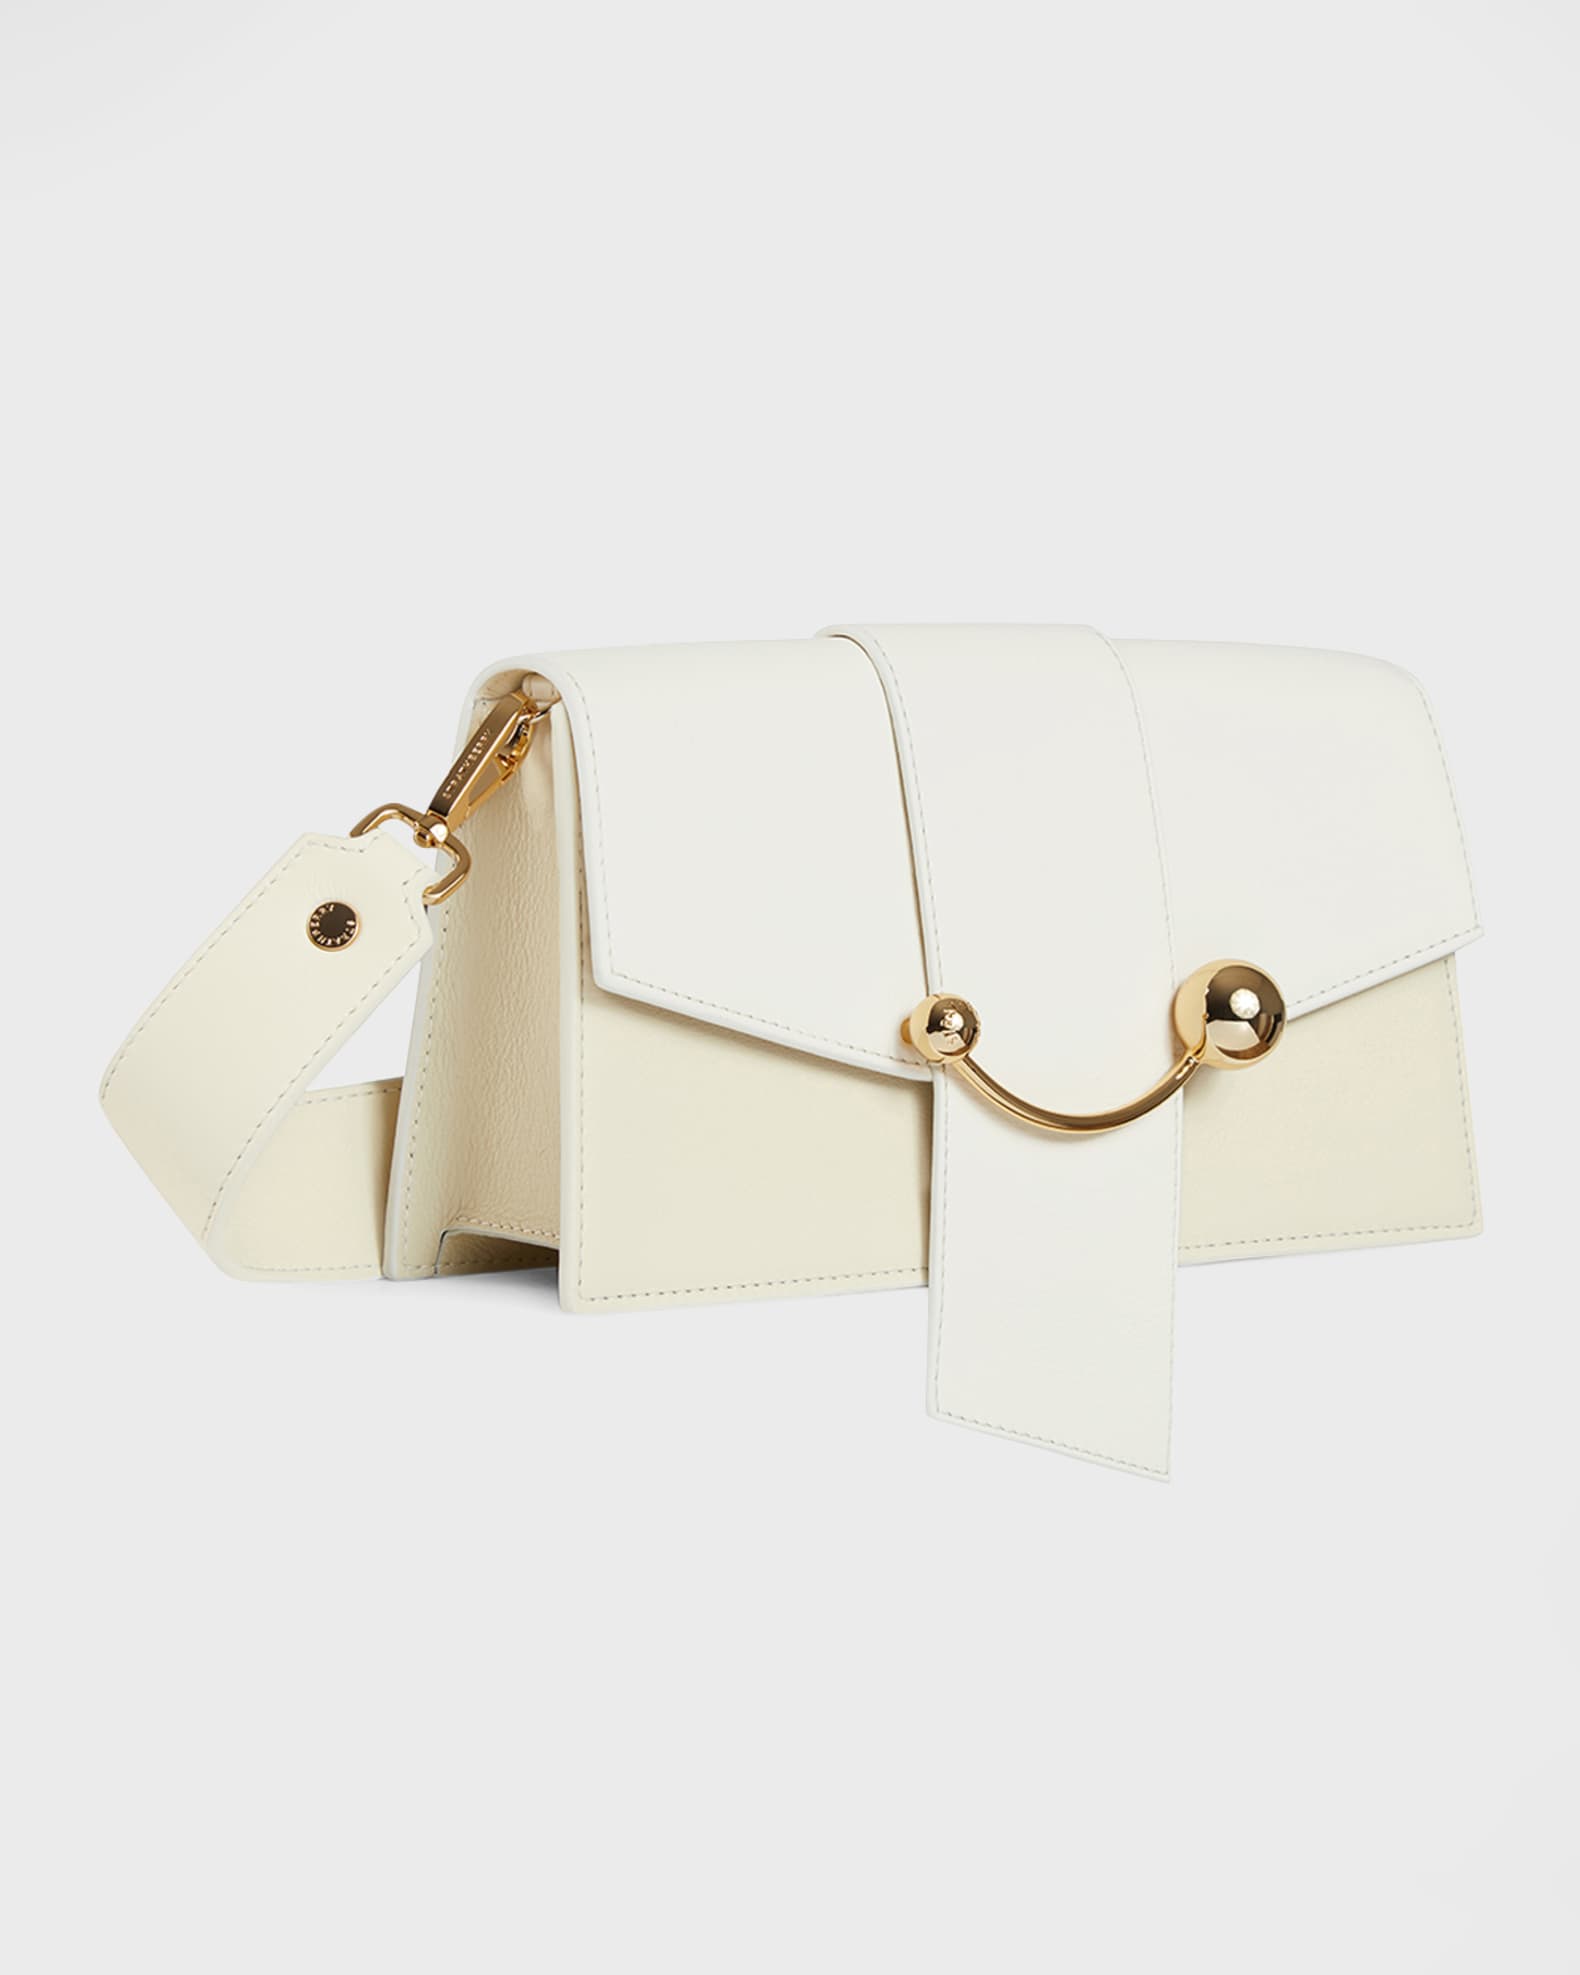 Strathberry Crescent Tricolor Leather Shoulder Bag in Vanilla/Sage